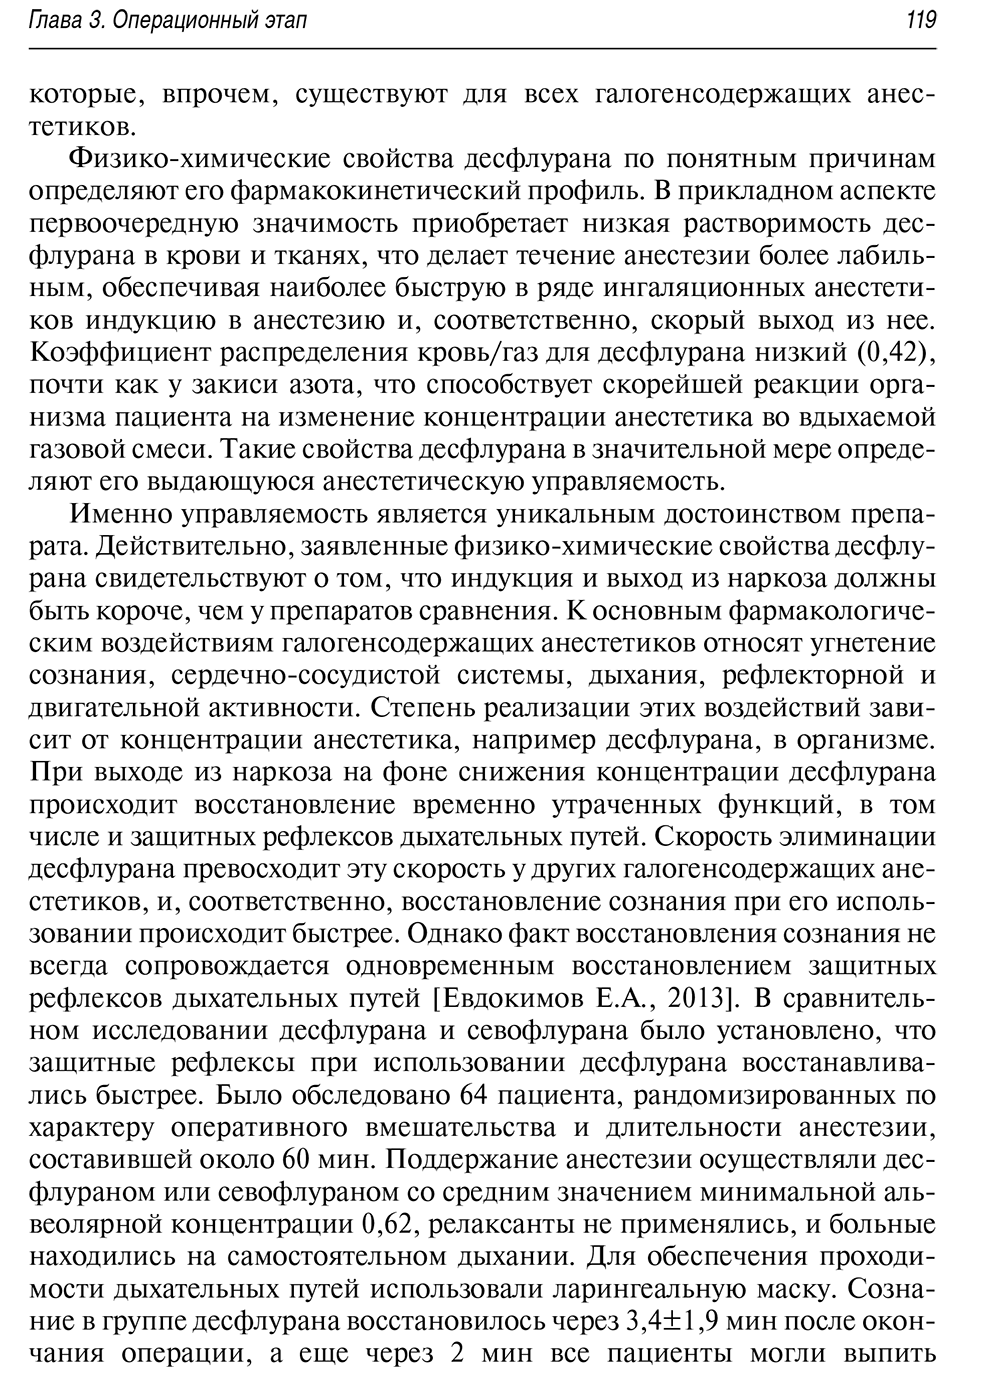 Пример страницы из книги "Хирургический больной: мультидисциплинарный подход" - В. В. Бояринцева, И. Н. Пасечника